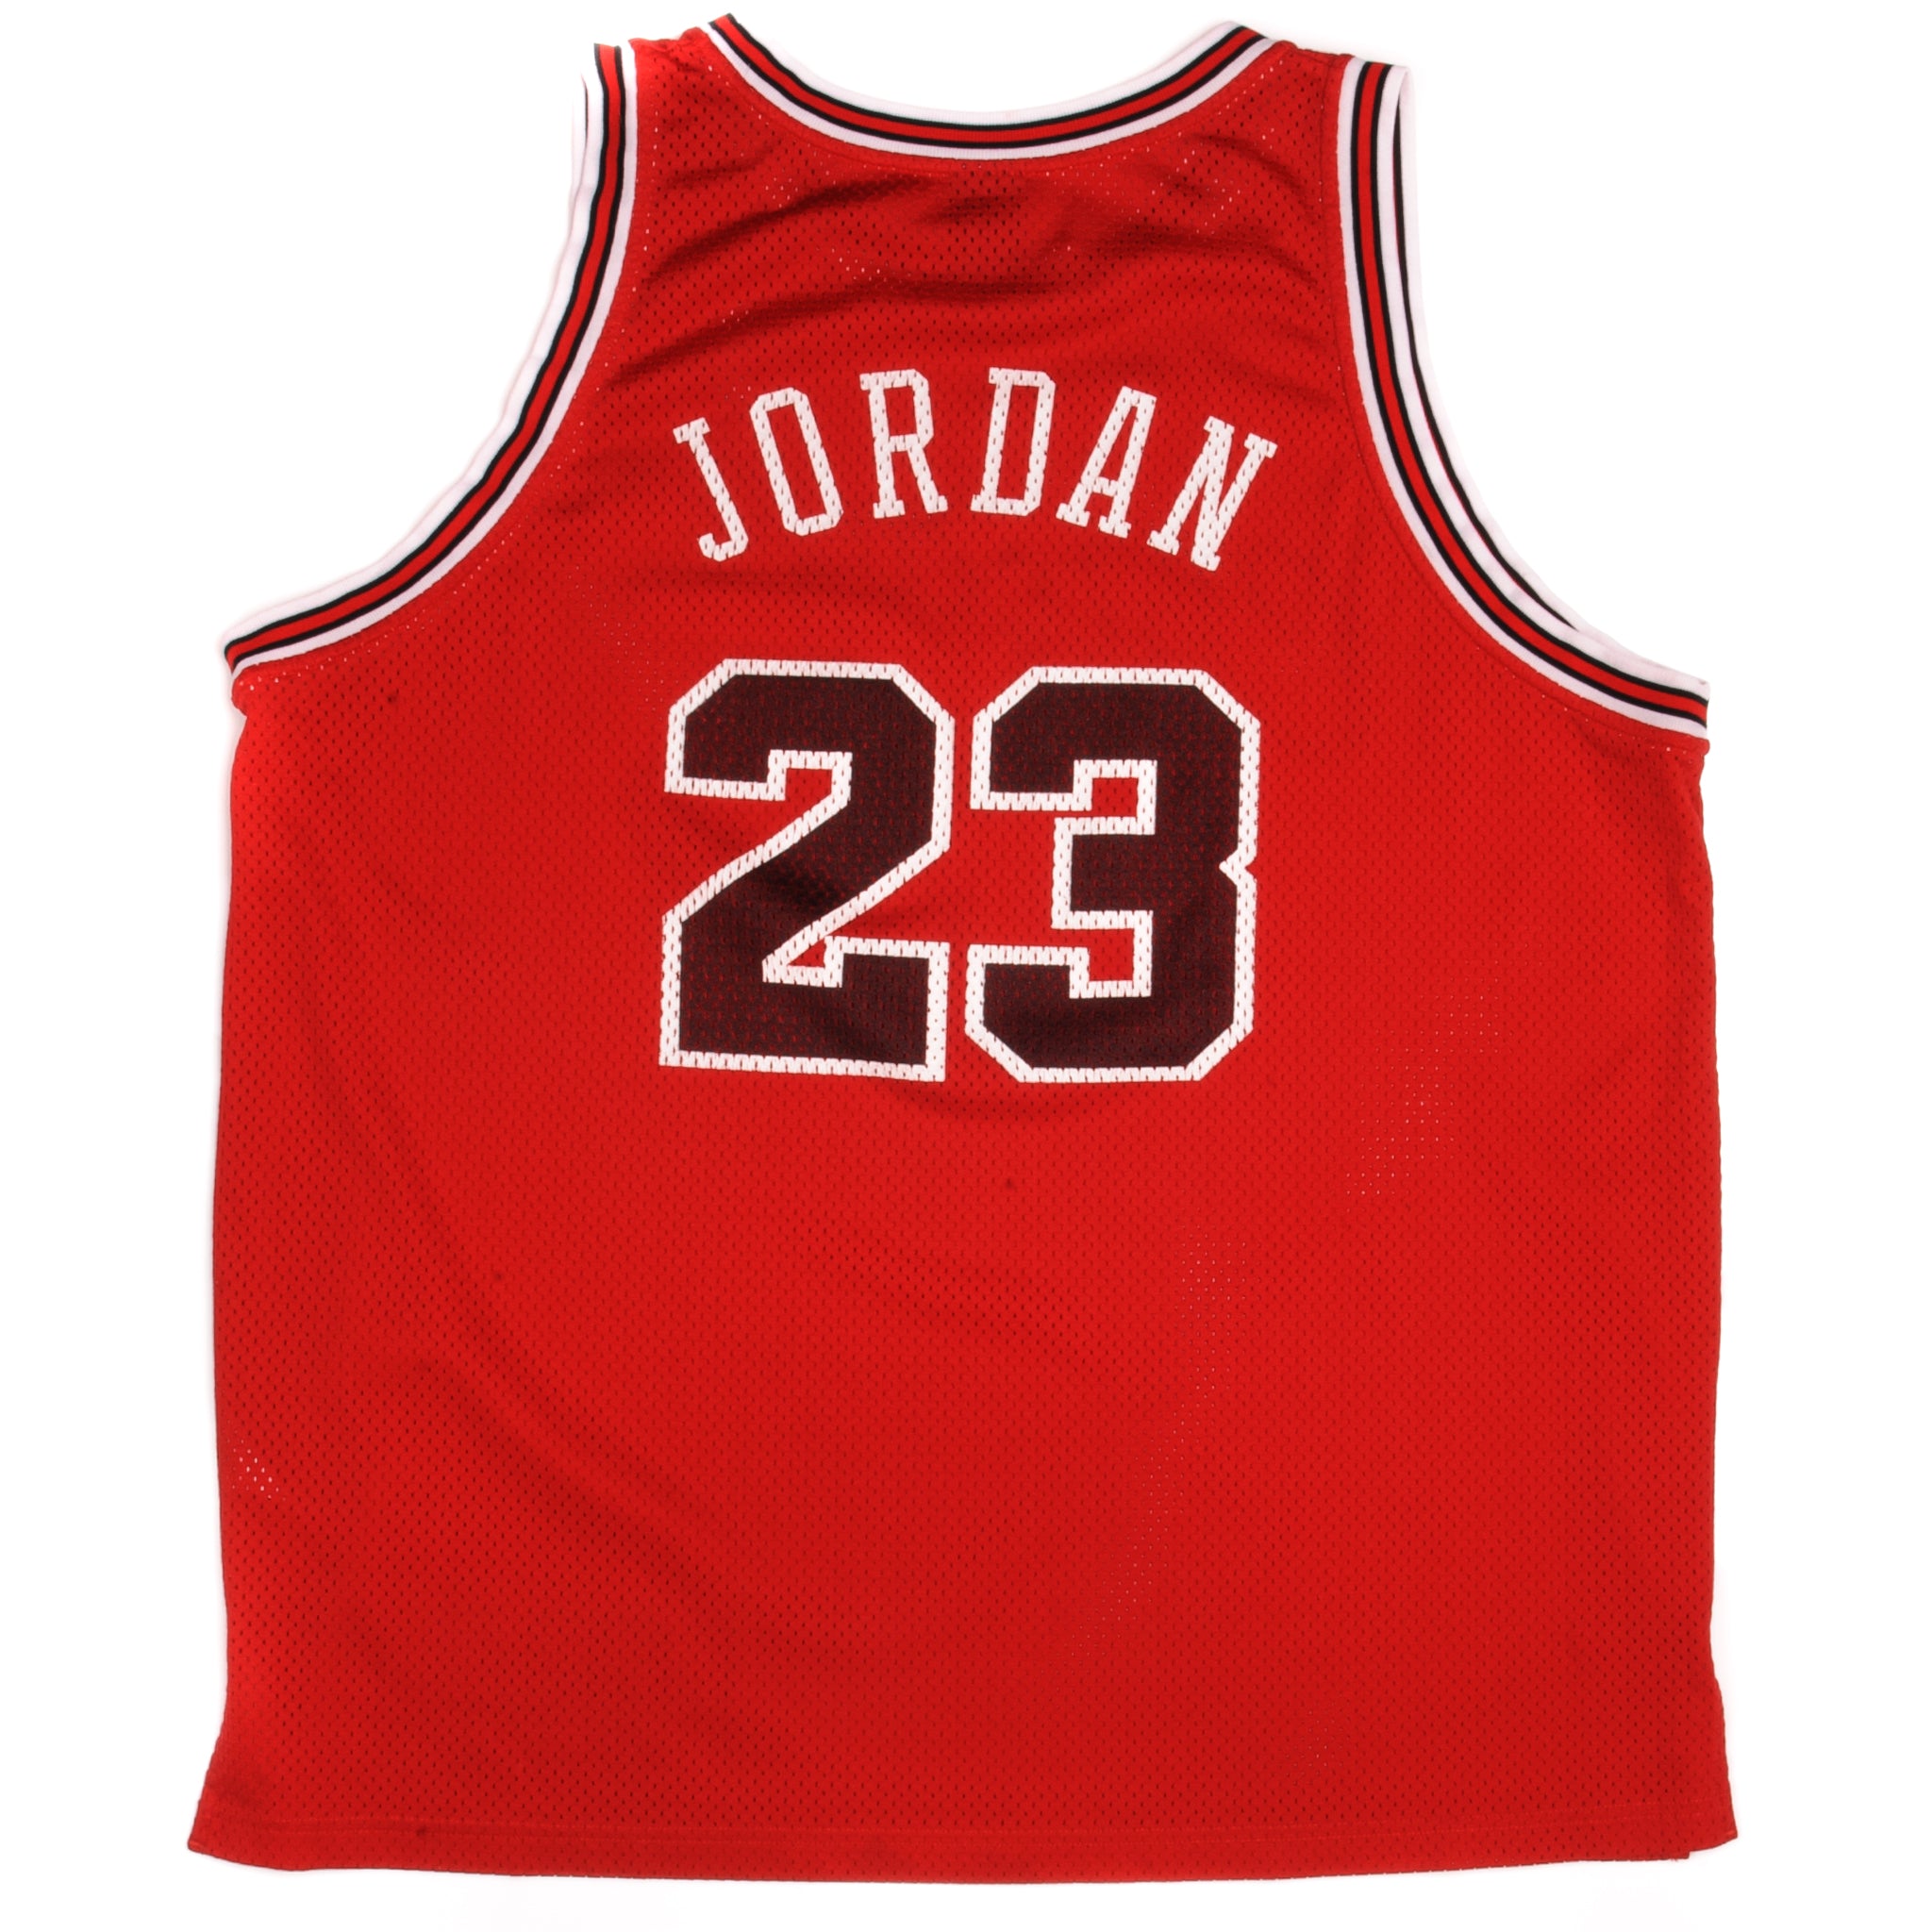 Jordan, Shirts, Mens Jordan Jersey Size Medium Air Jordan Basketball  Casual Summer